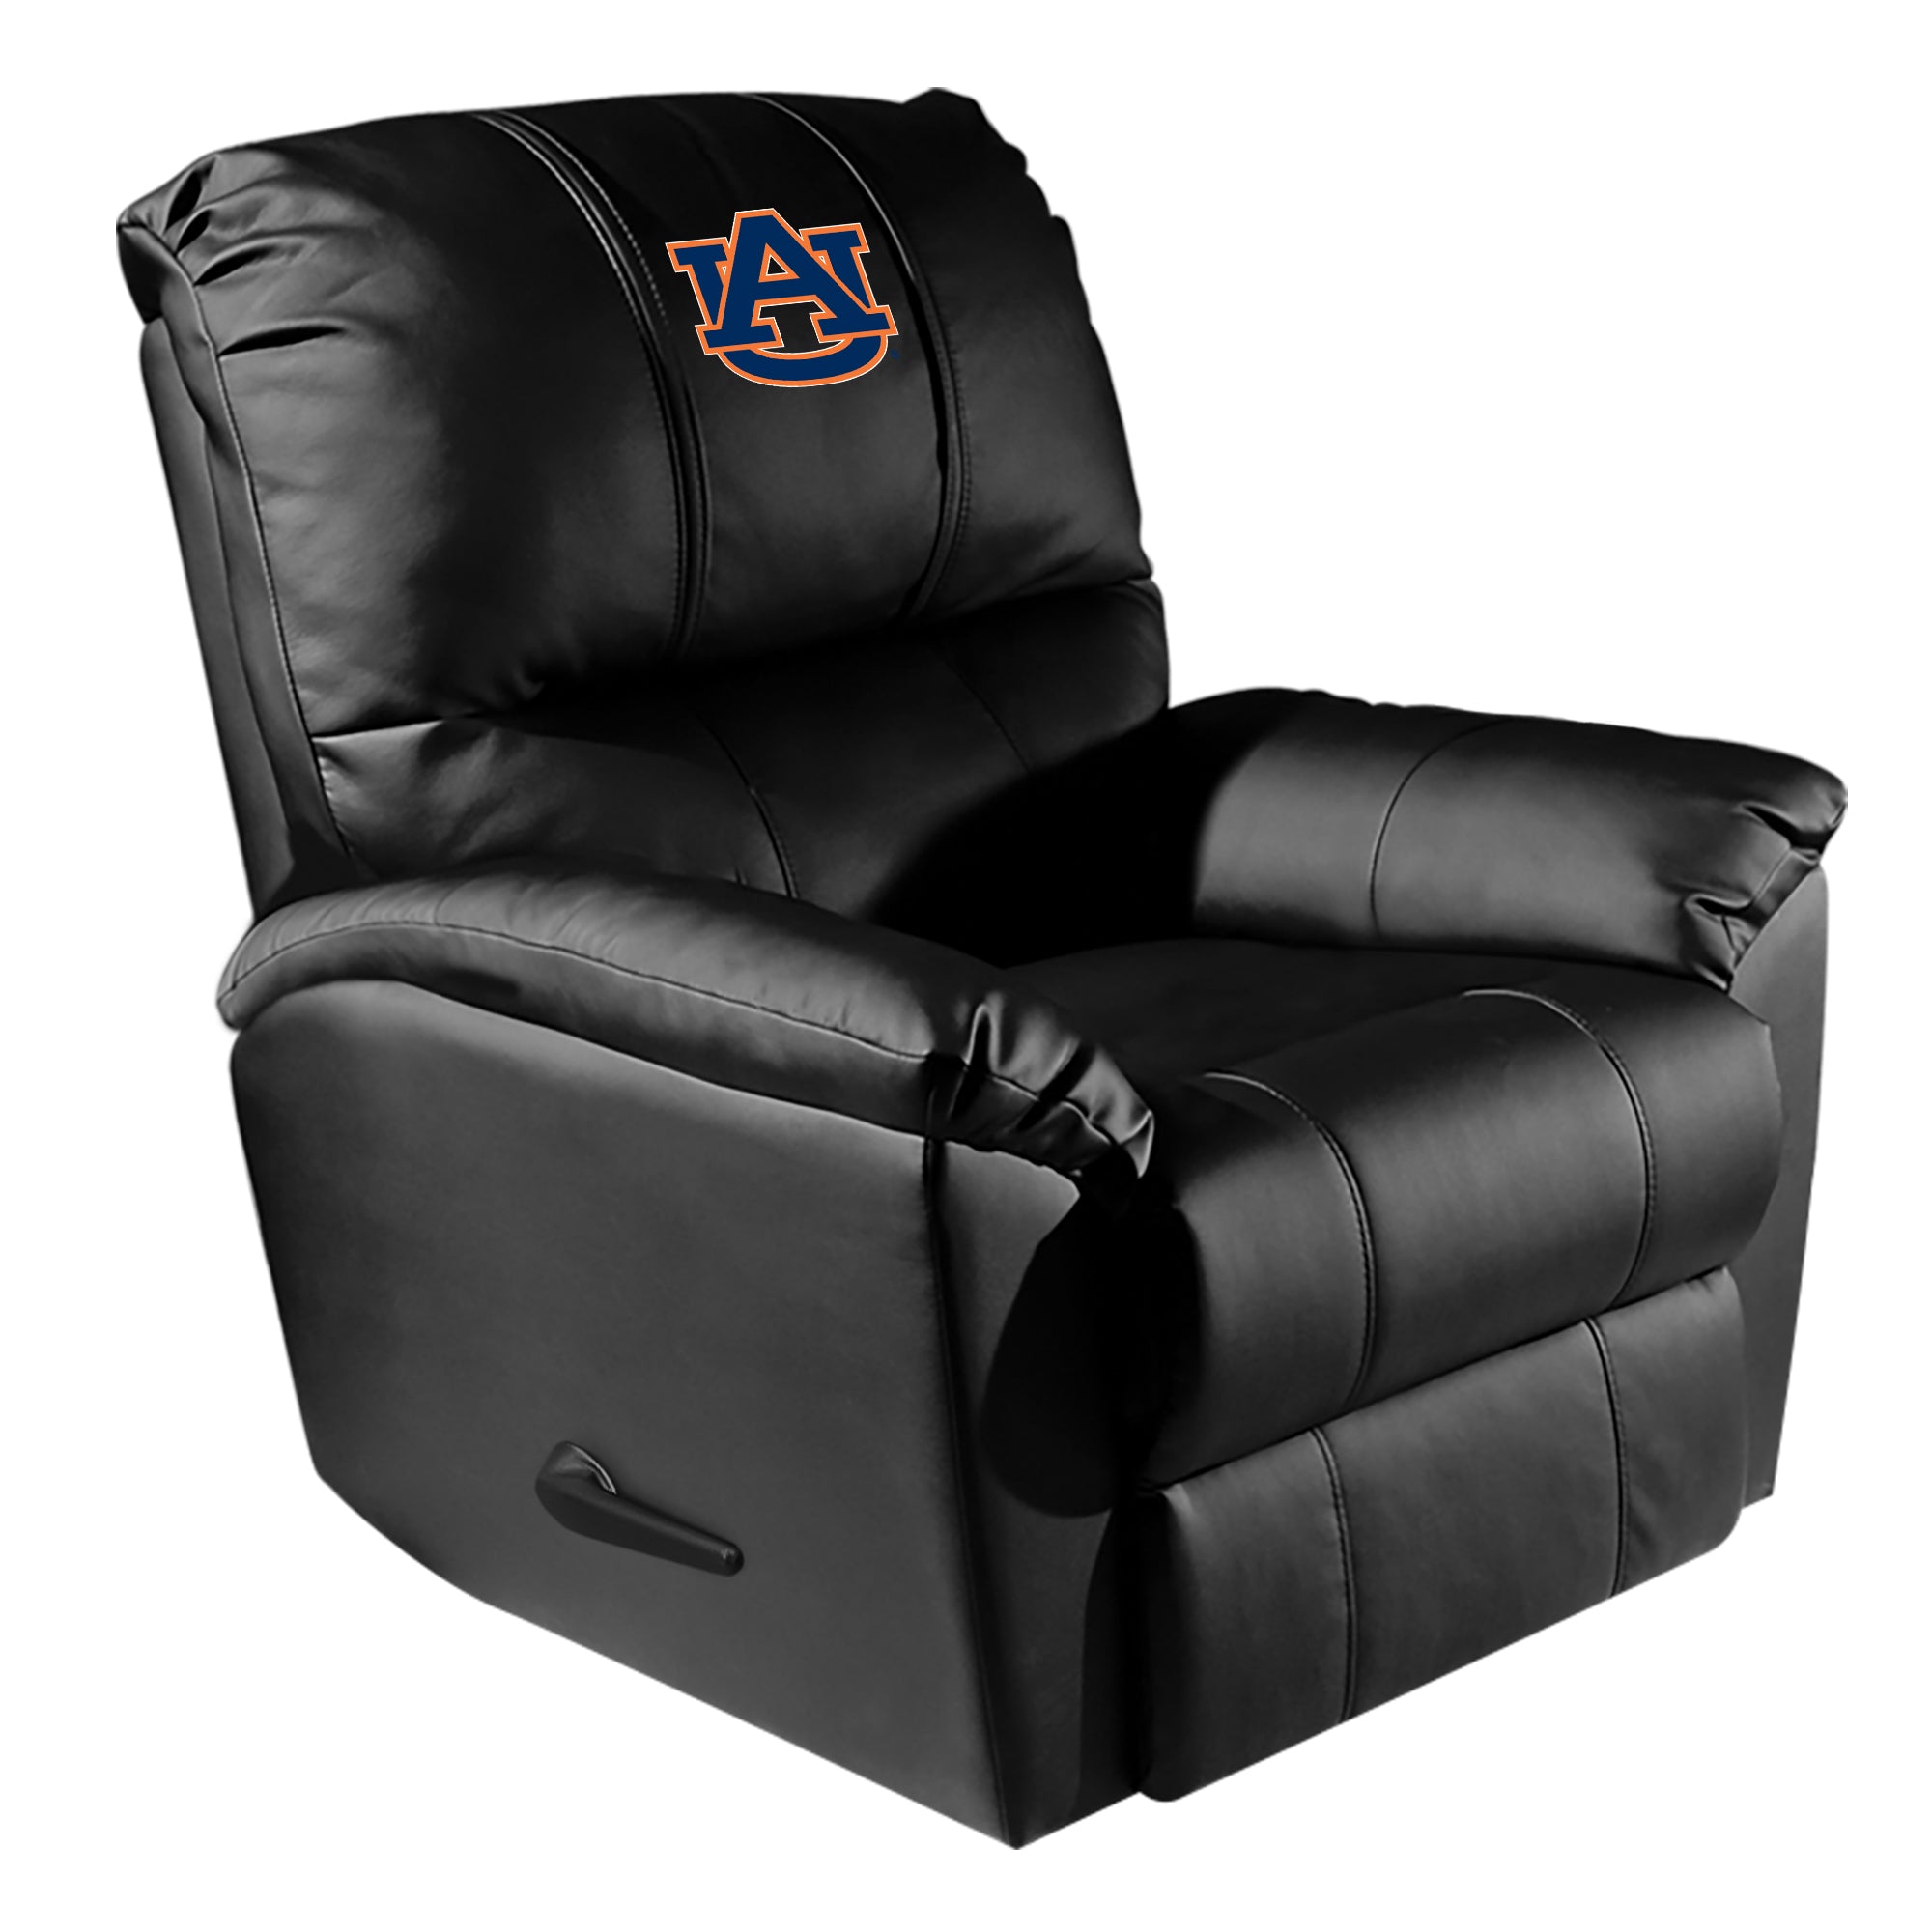 Auburn Tigers Silver Club Chair with Auburn Tigers Logo